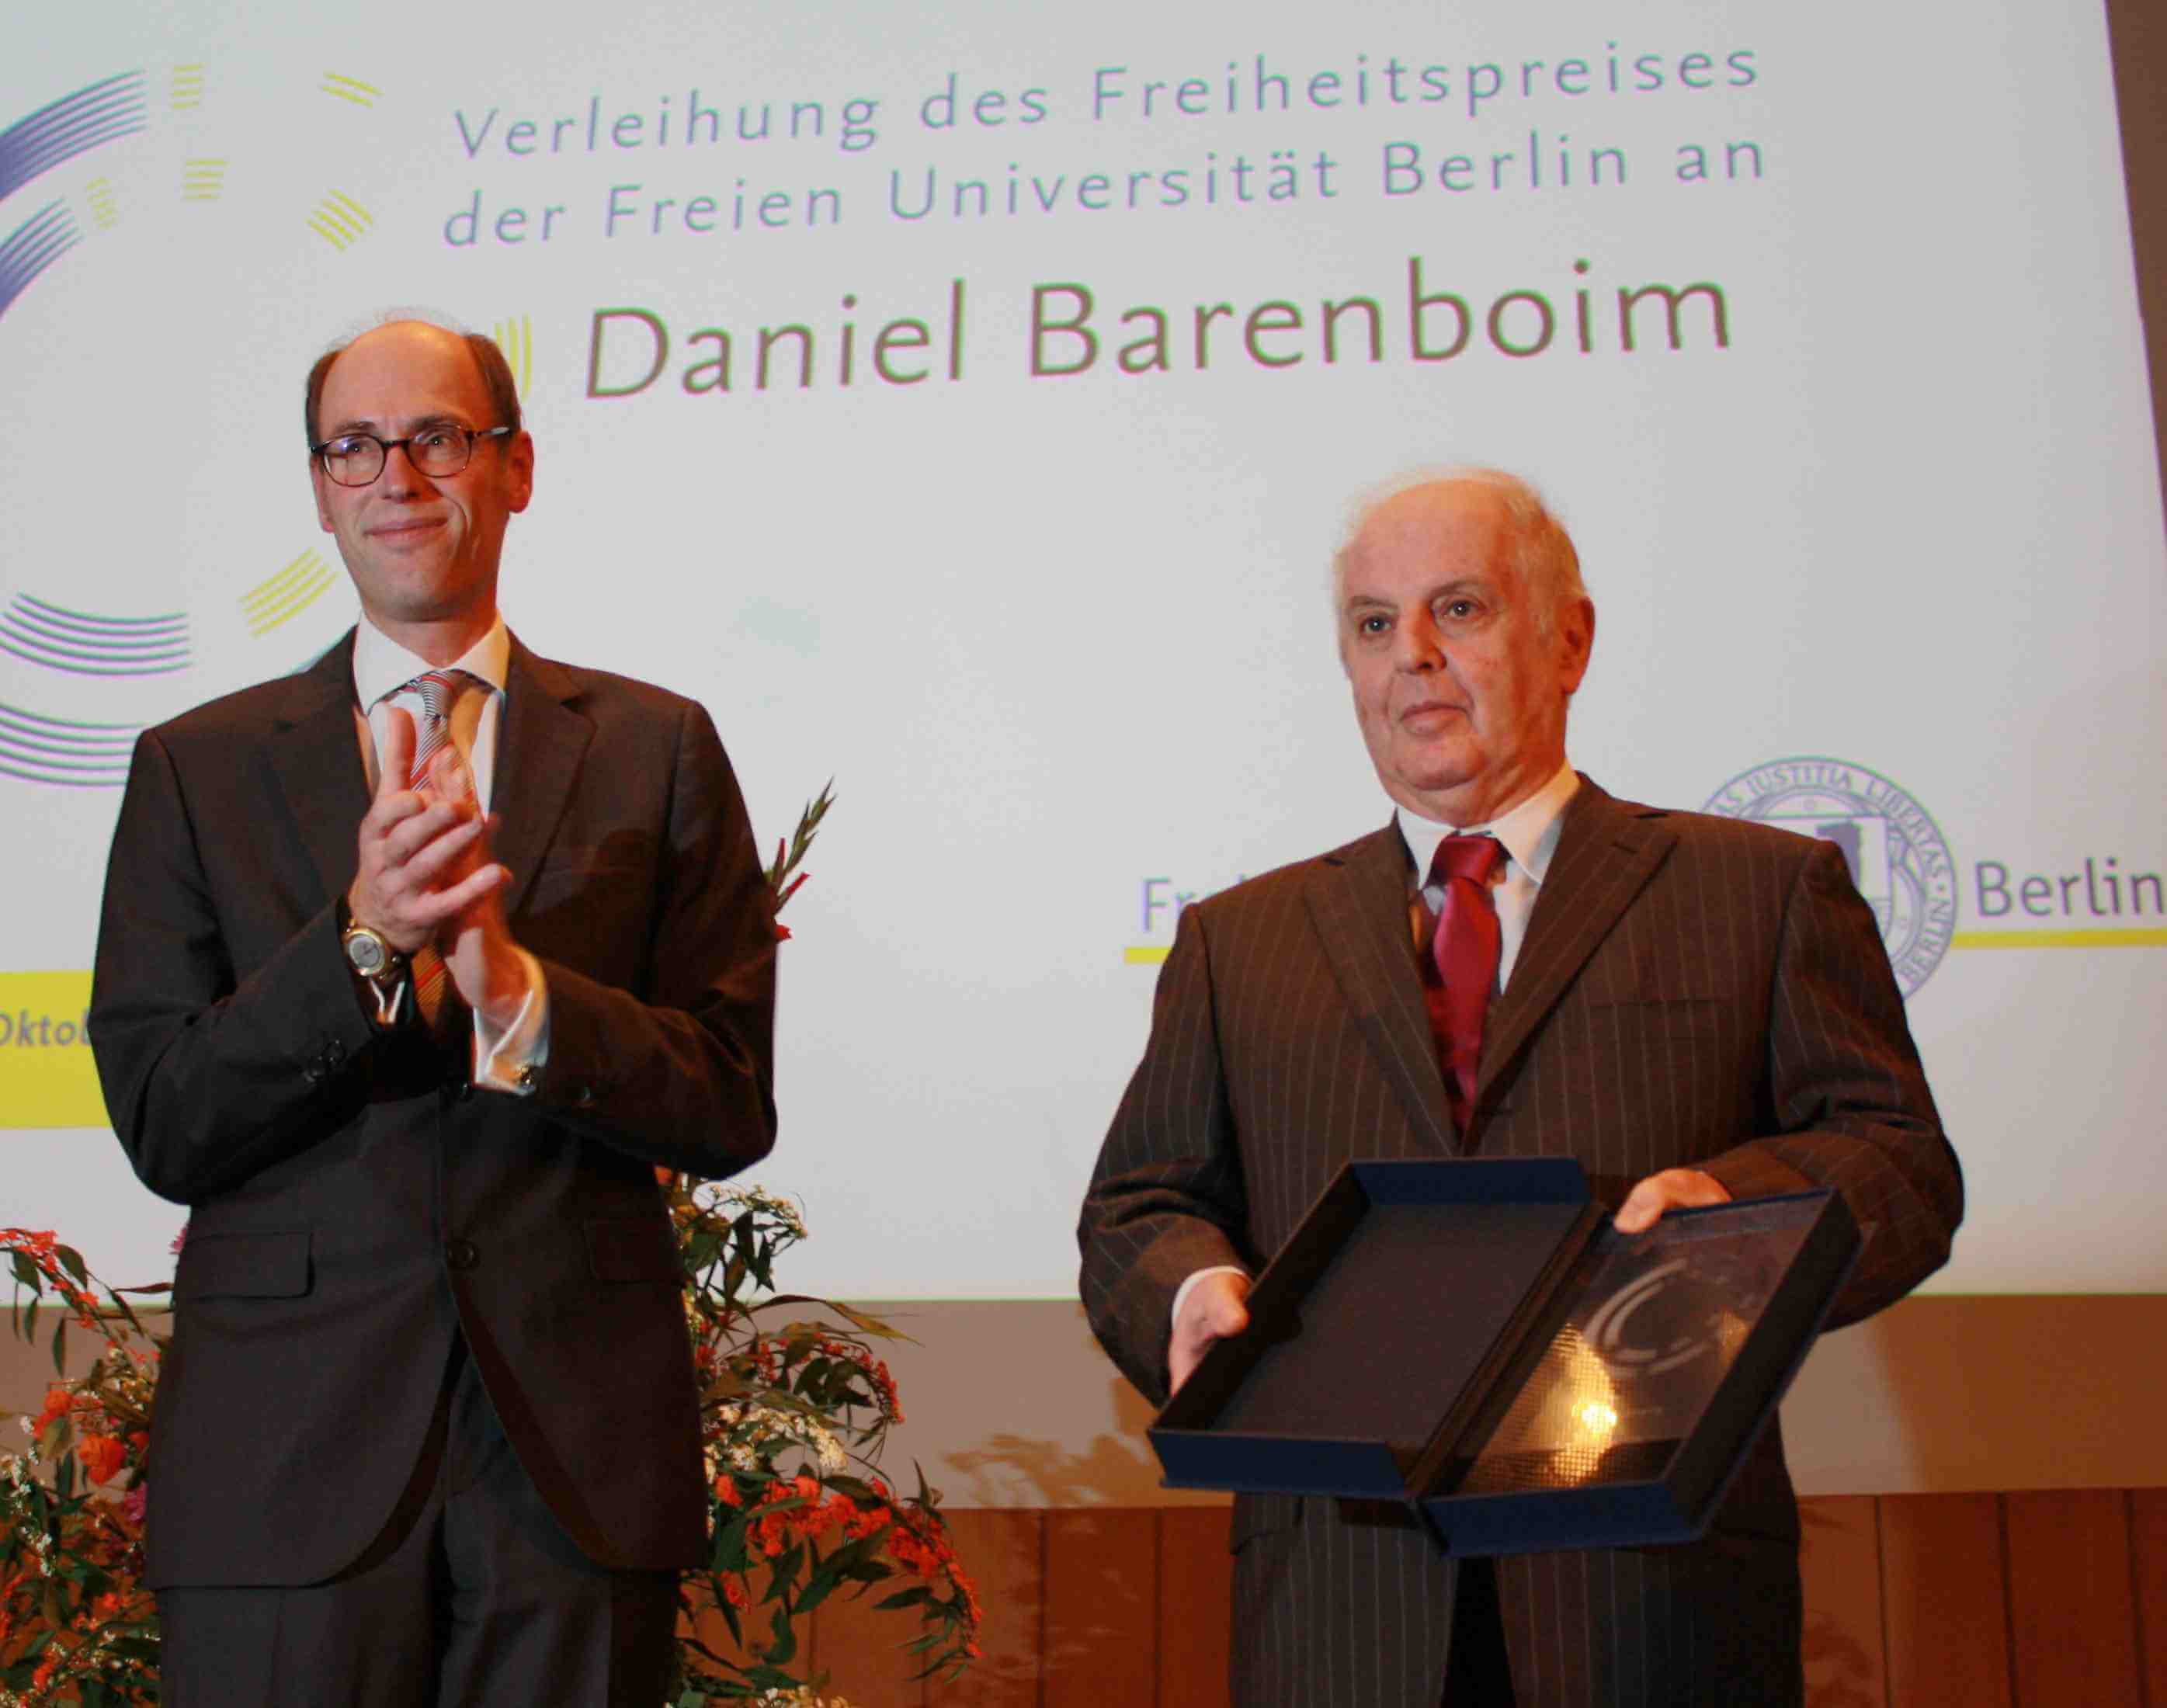 Verständnis durch Musik: Daniel Barenboim mit Freiheitspreis der Freien Universität ausgezeichnet